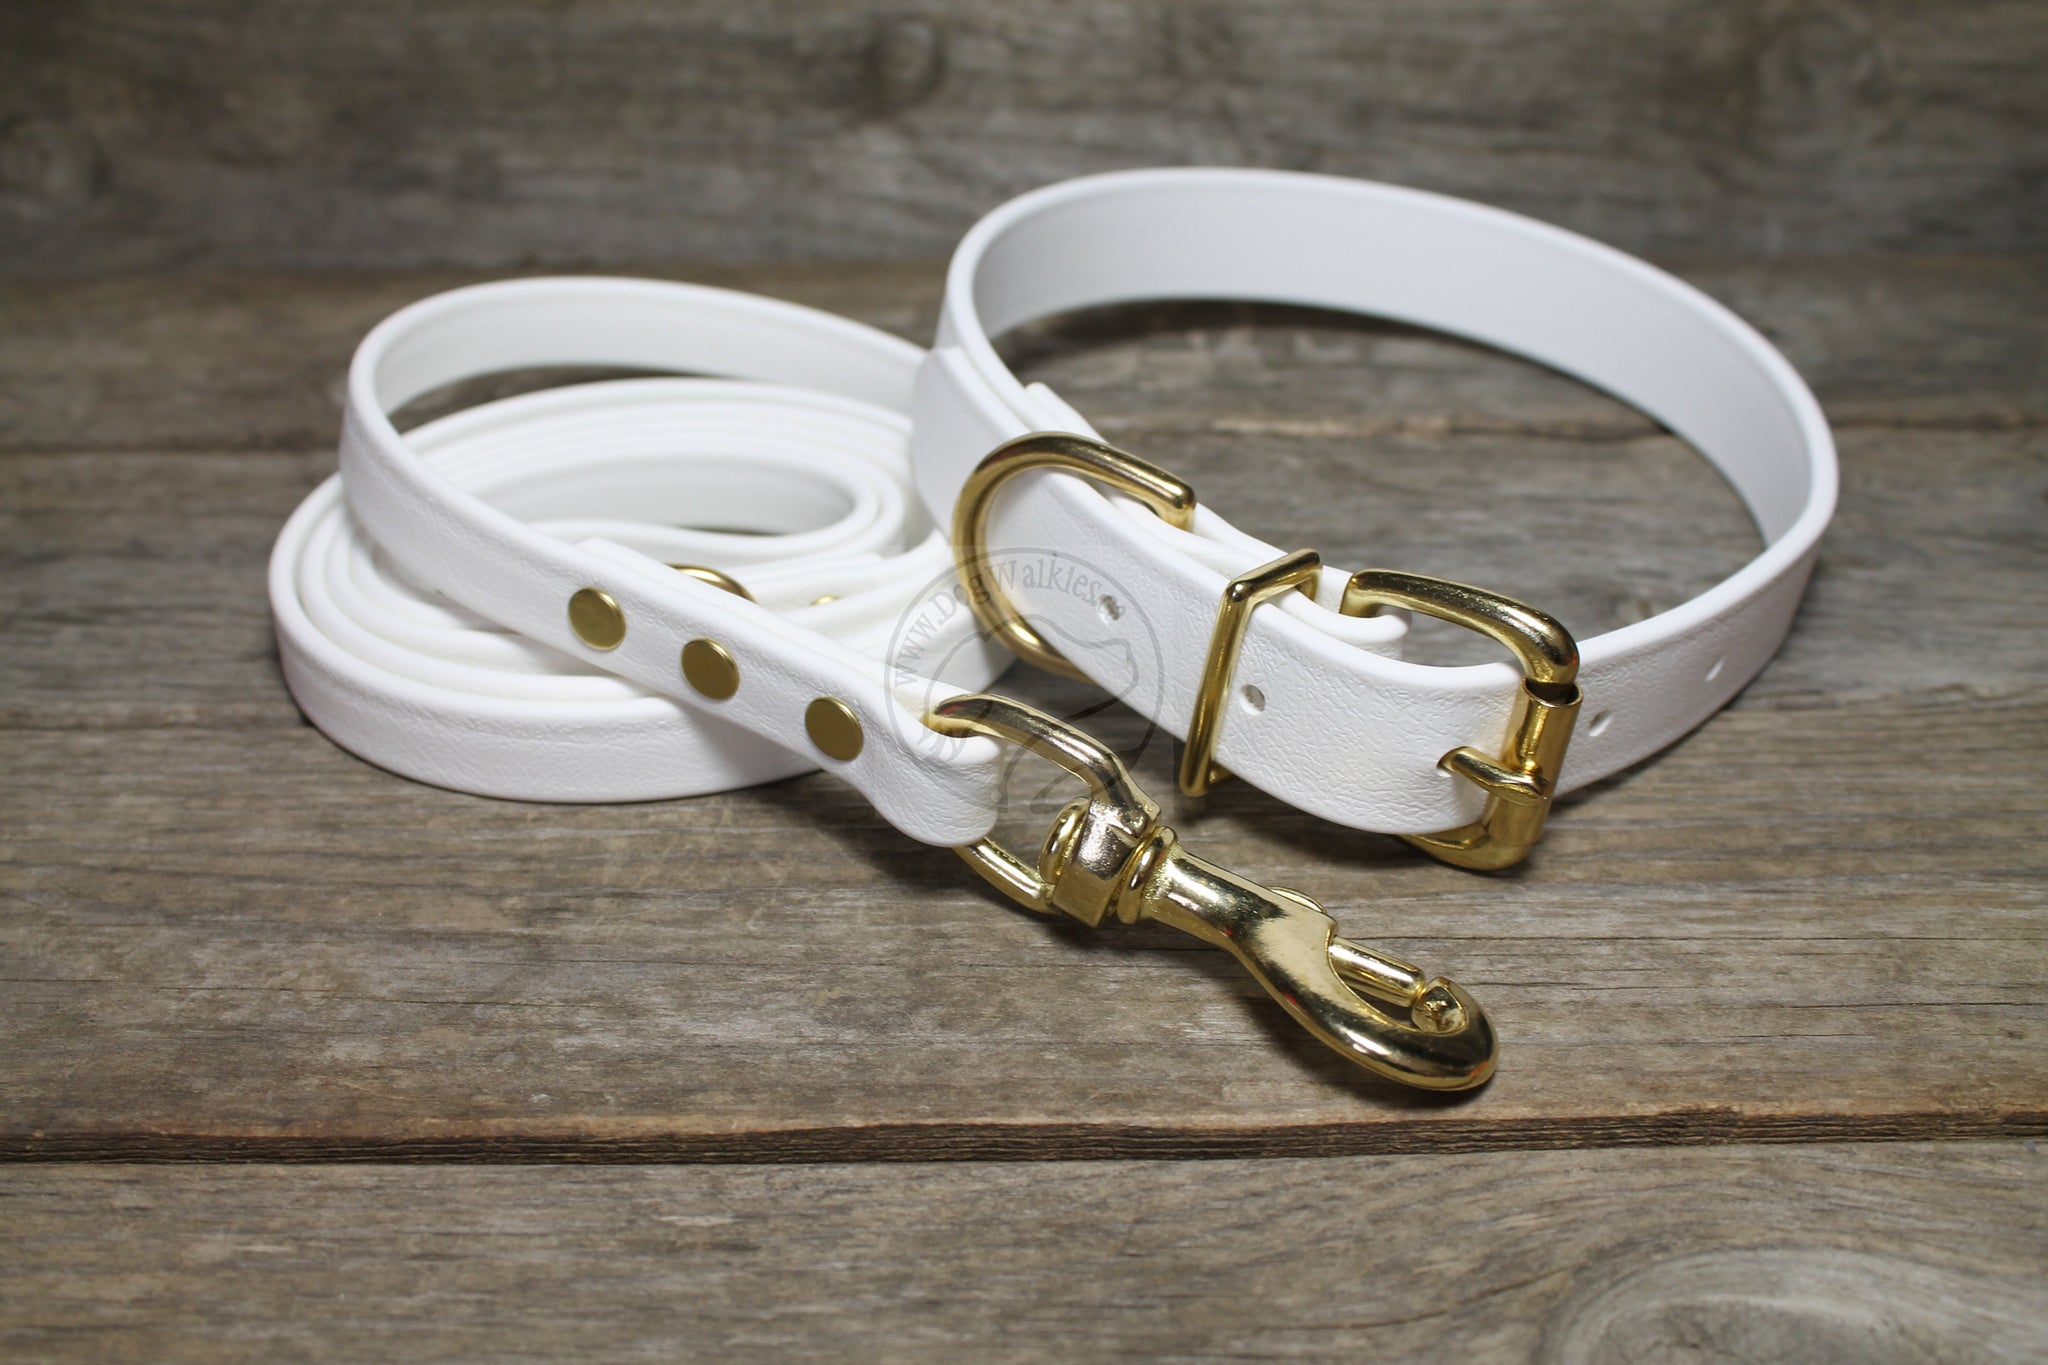 Snow White Biothane Dog Collar - 1 inch (25mm) wide